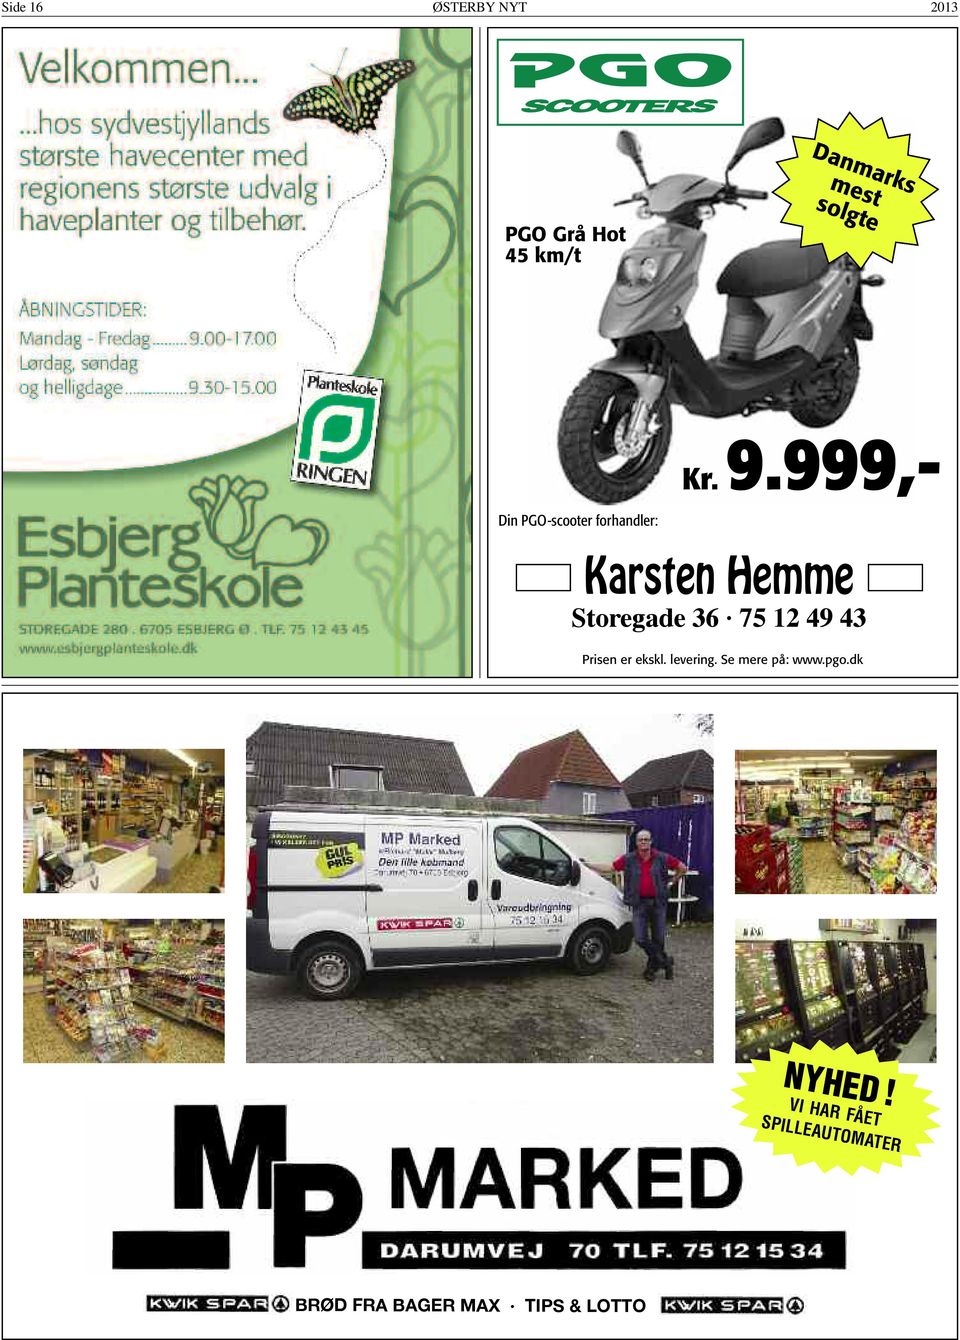 999,- Din PGO-scooter forhandler: Karsten Hemme Storegade 36 75